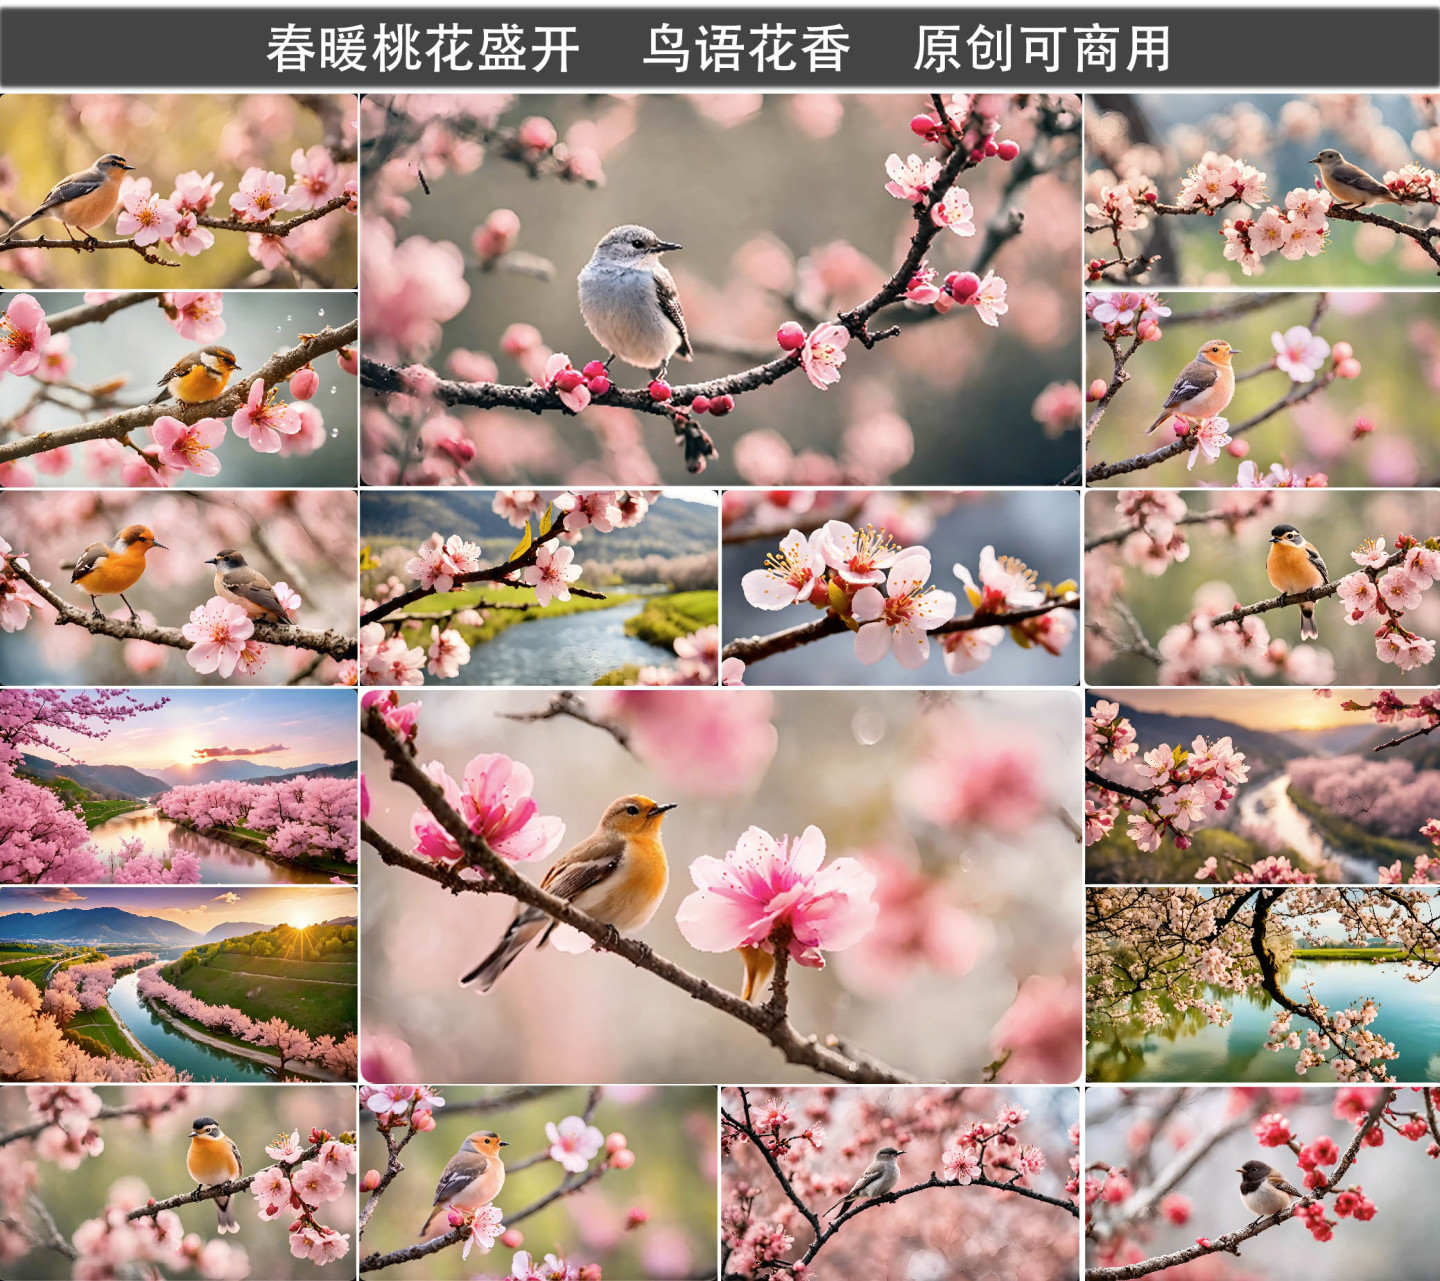 春天来了 春暖花开 鸟语花香 桃花节